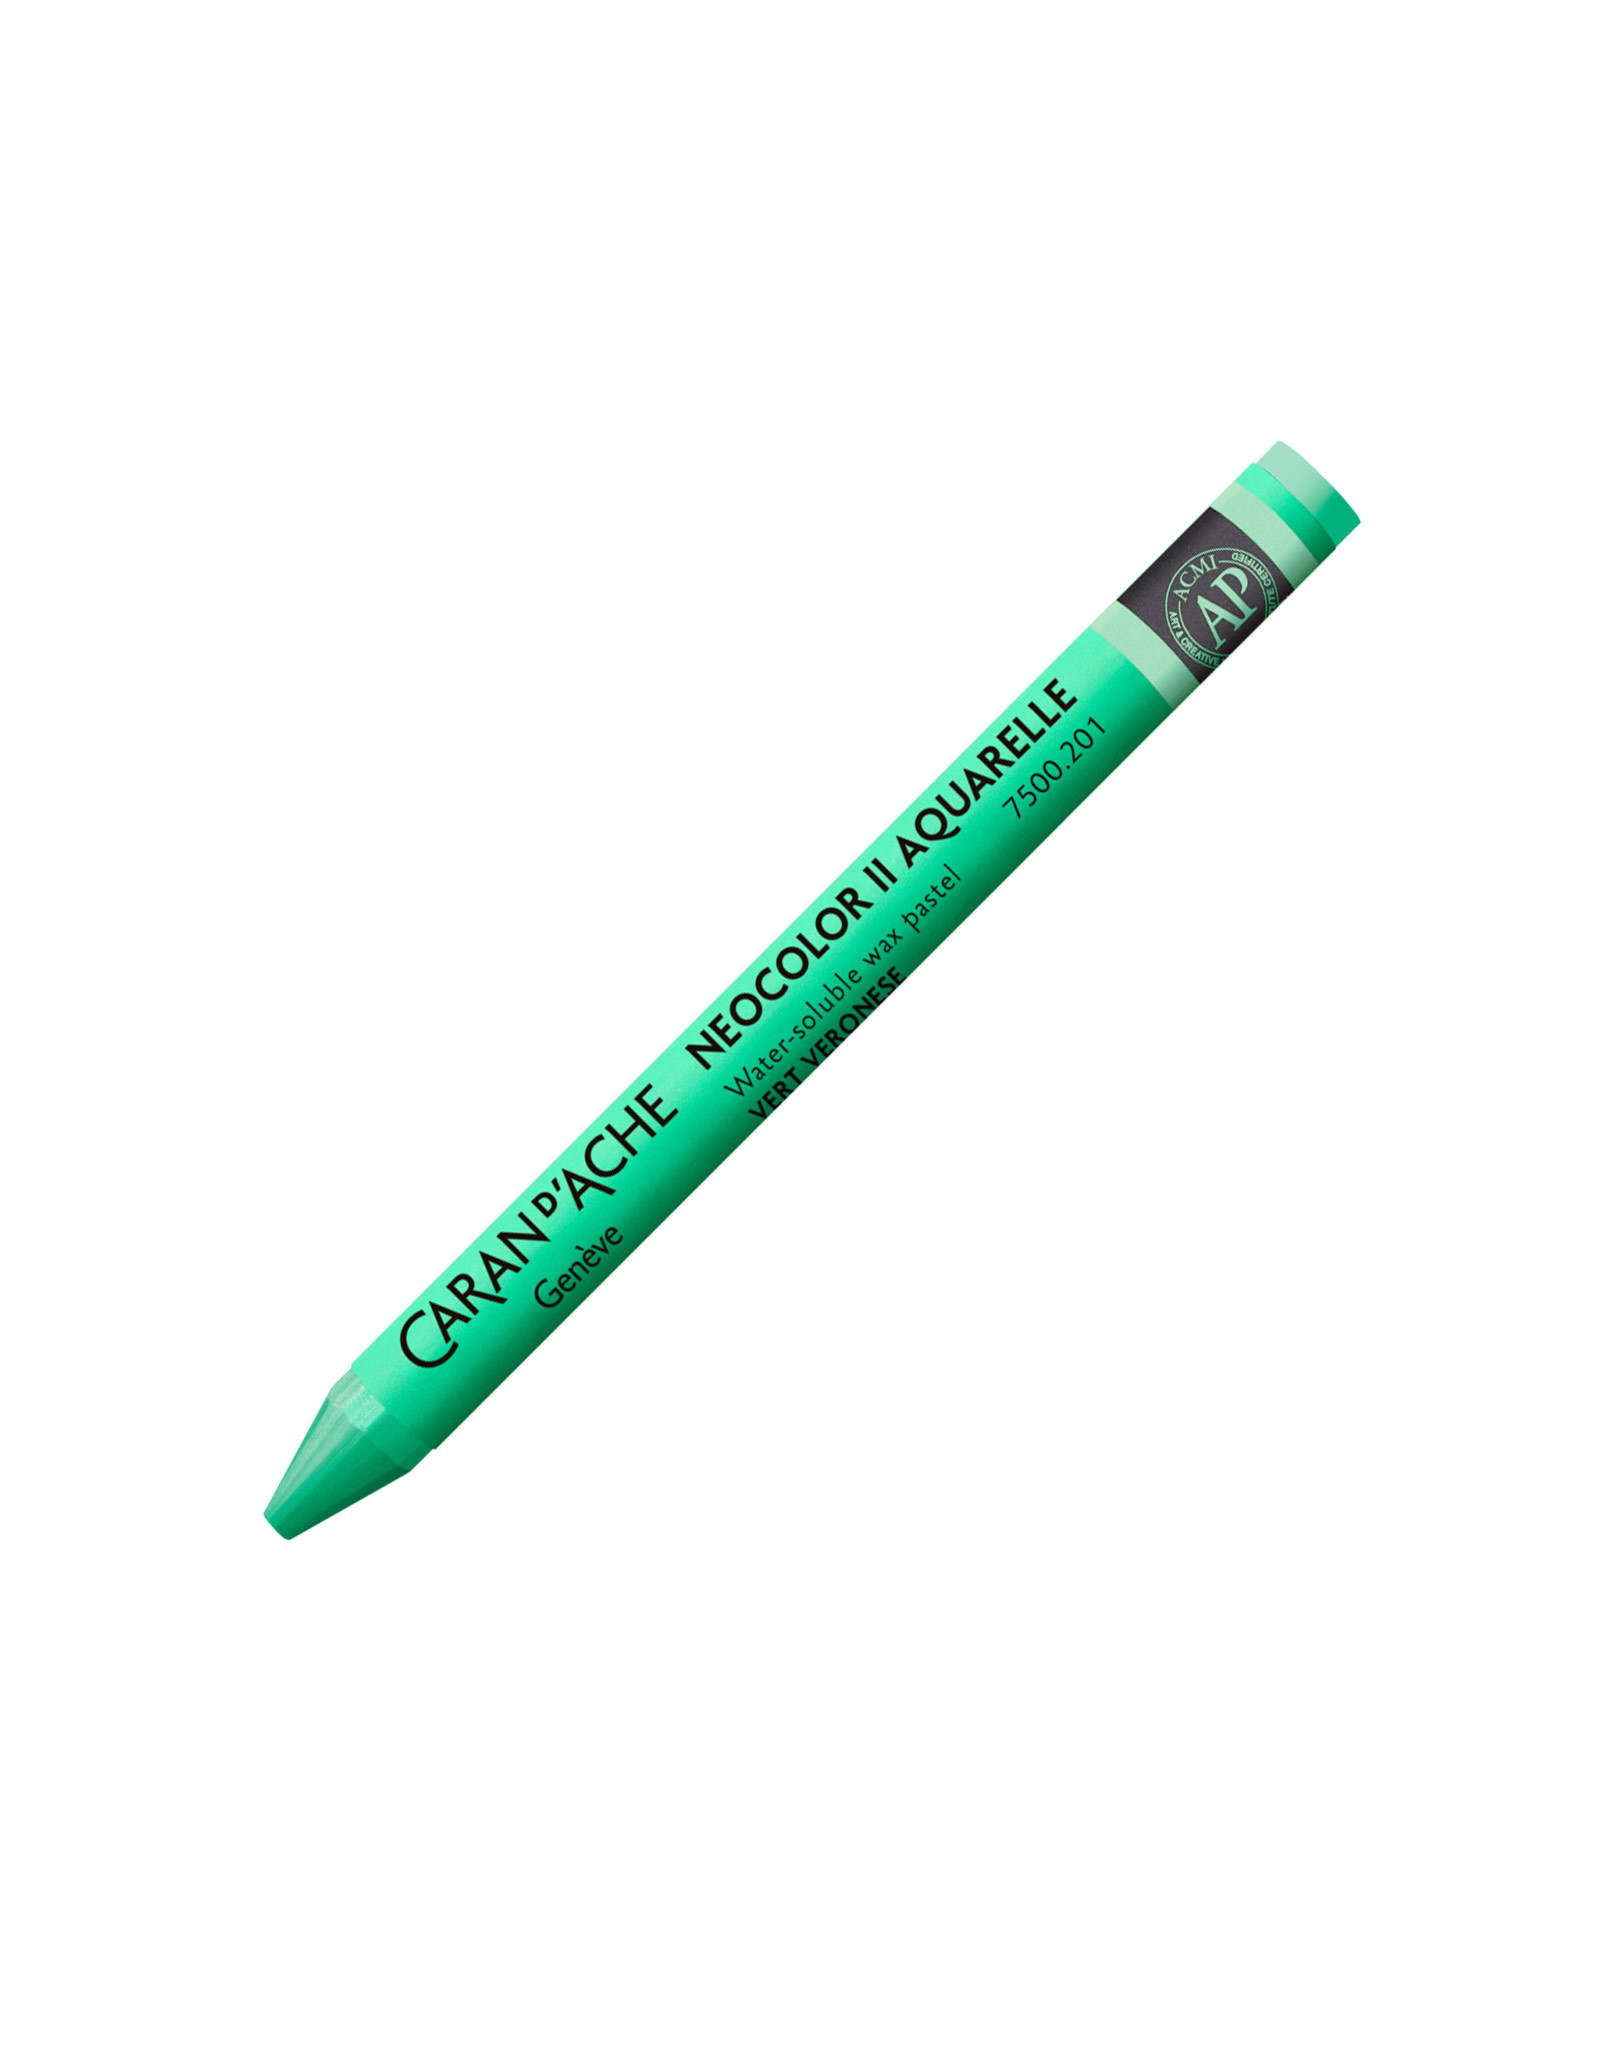 Caran d'Ache Neocolor II Crayons Veronese Green